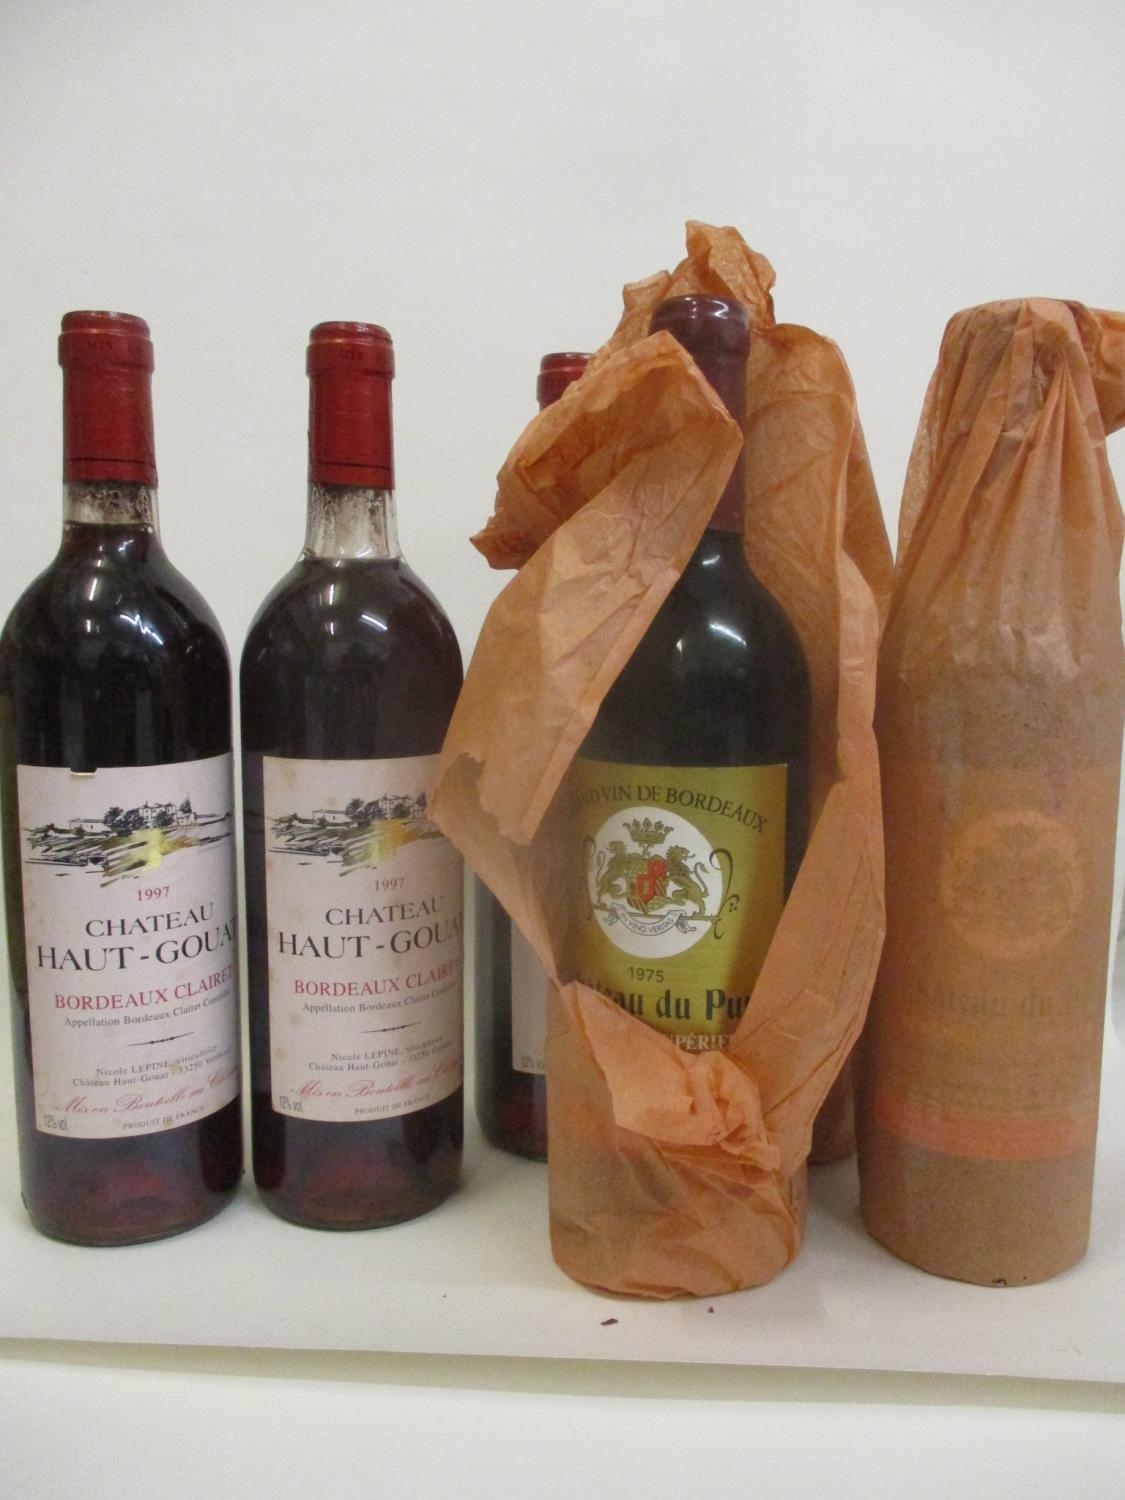 Three bottles of Chateau du Puy - Bordeaux Superieur A.C 1995 - R. Amoreau, three bottles of Chateau